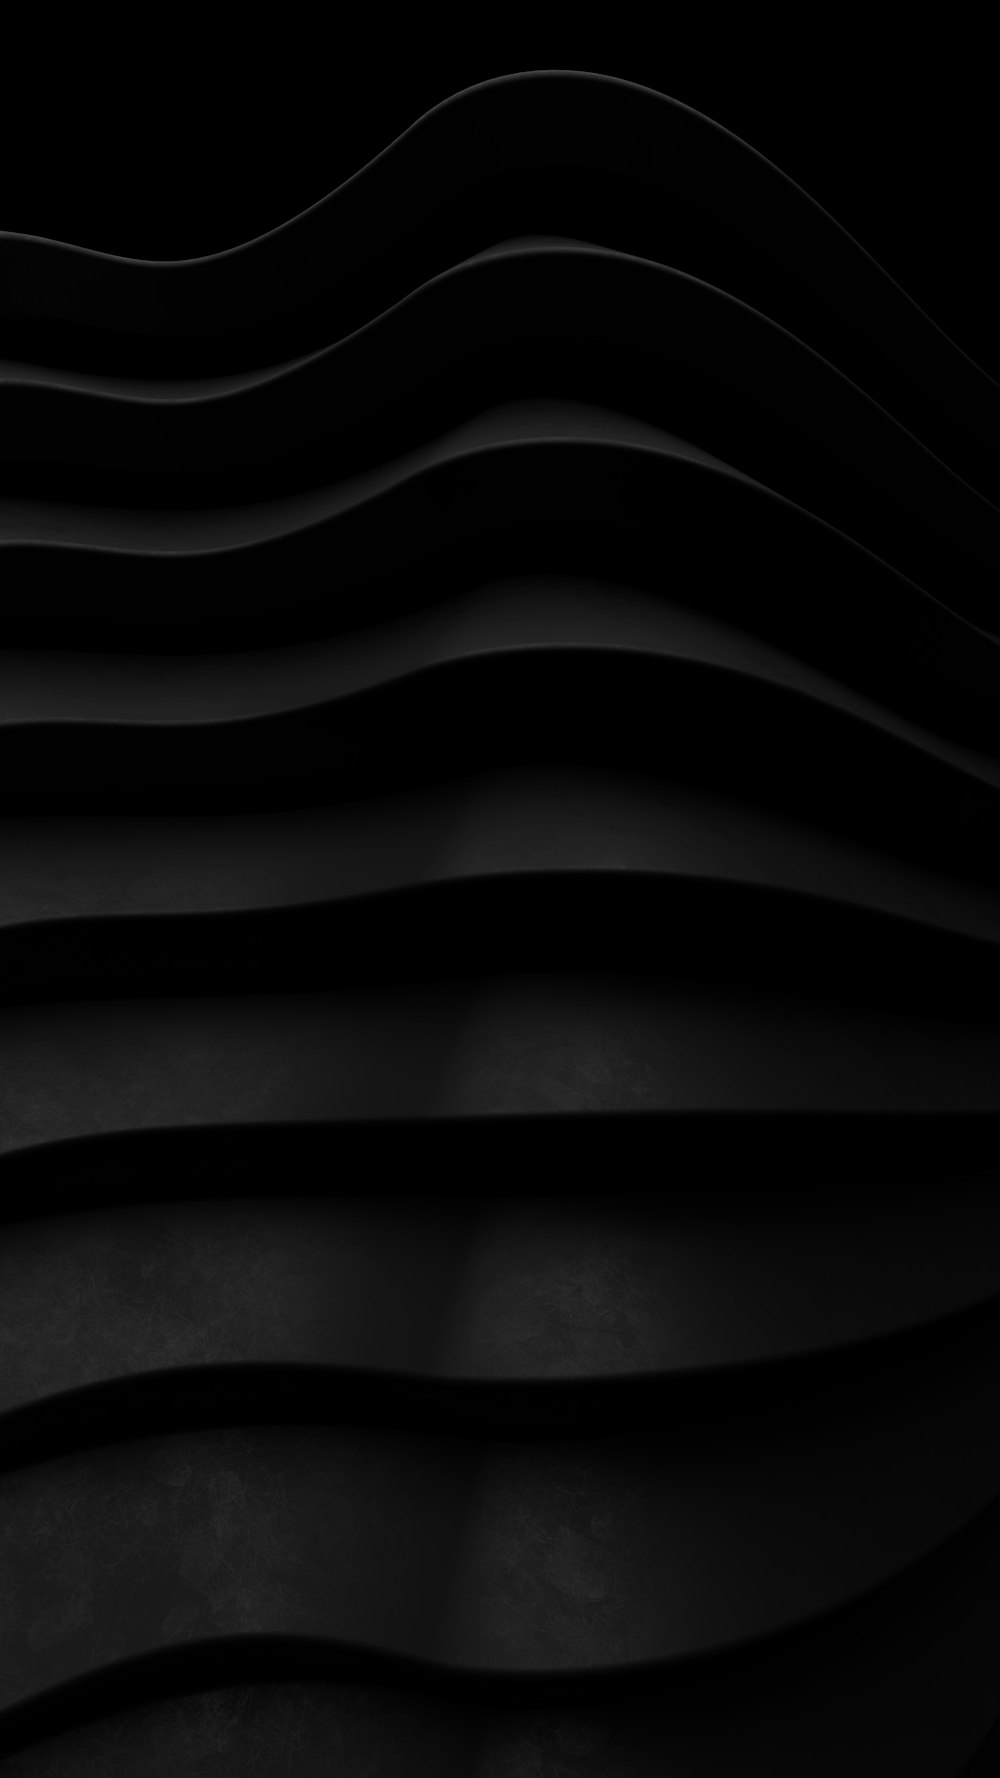 Une photo en noir et blanc de lignes ondulées